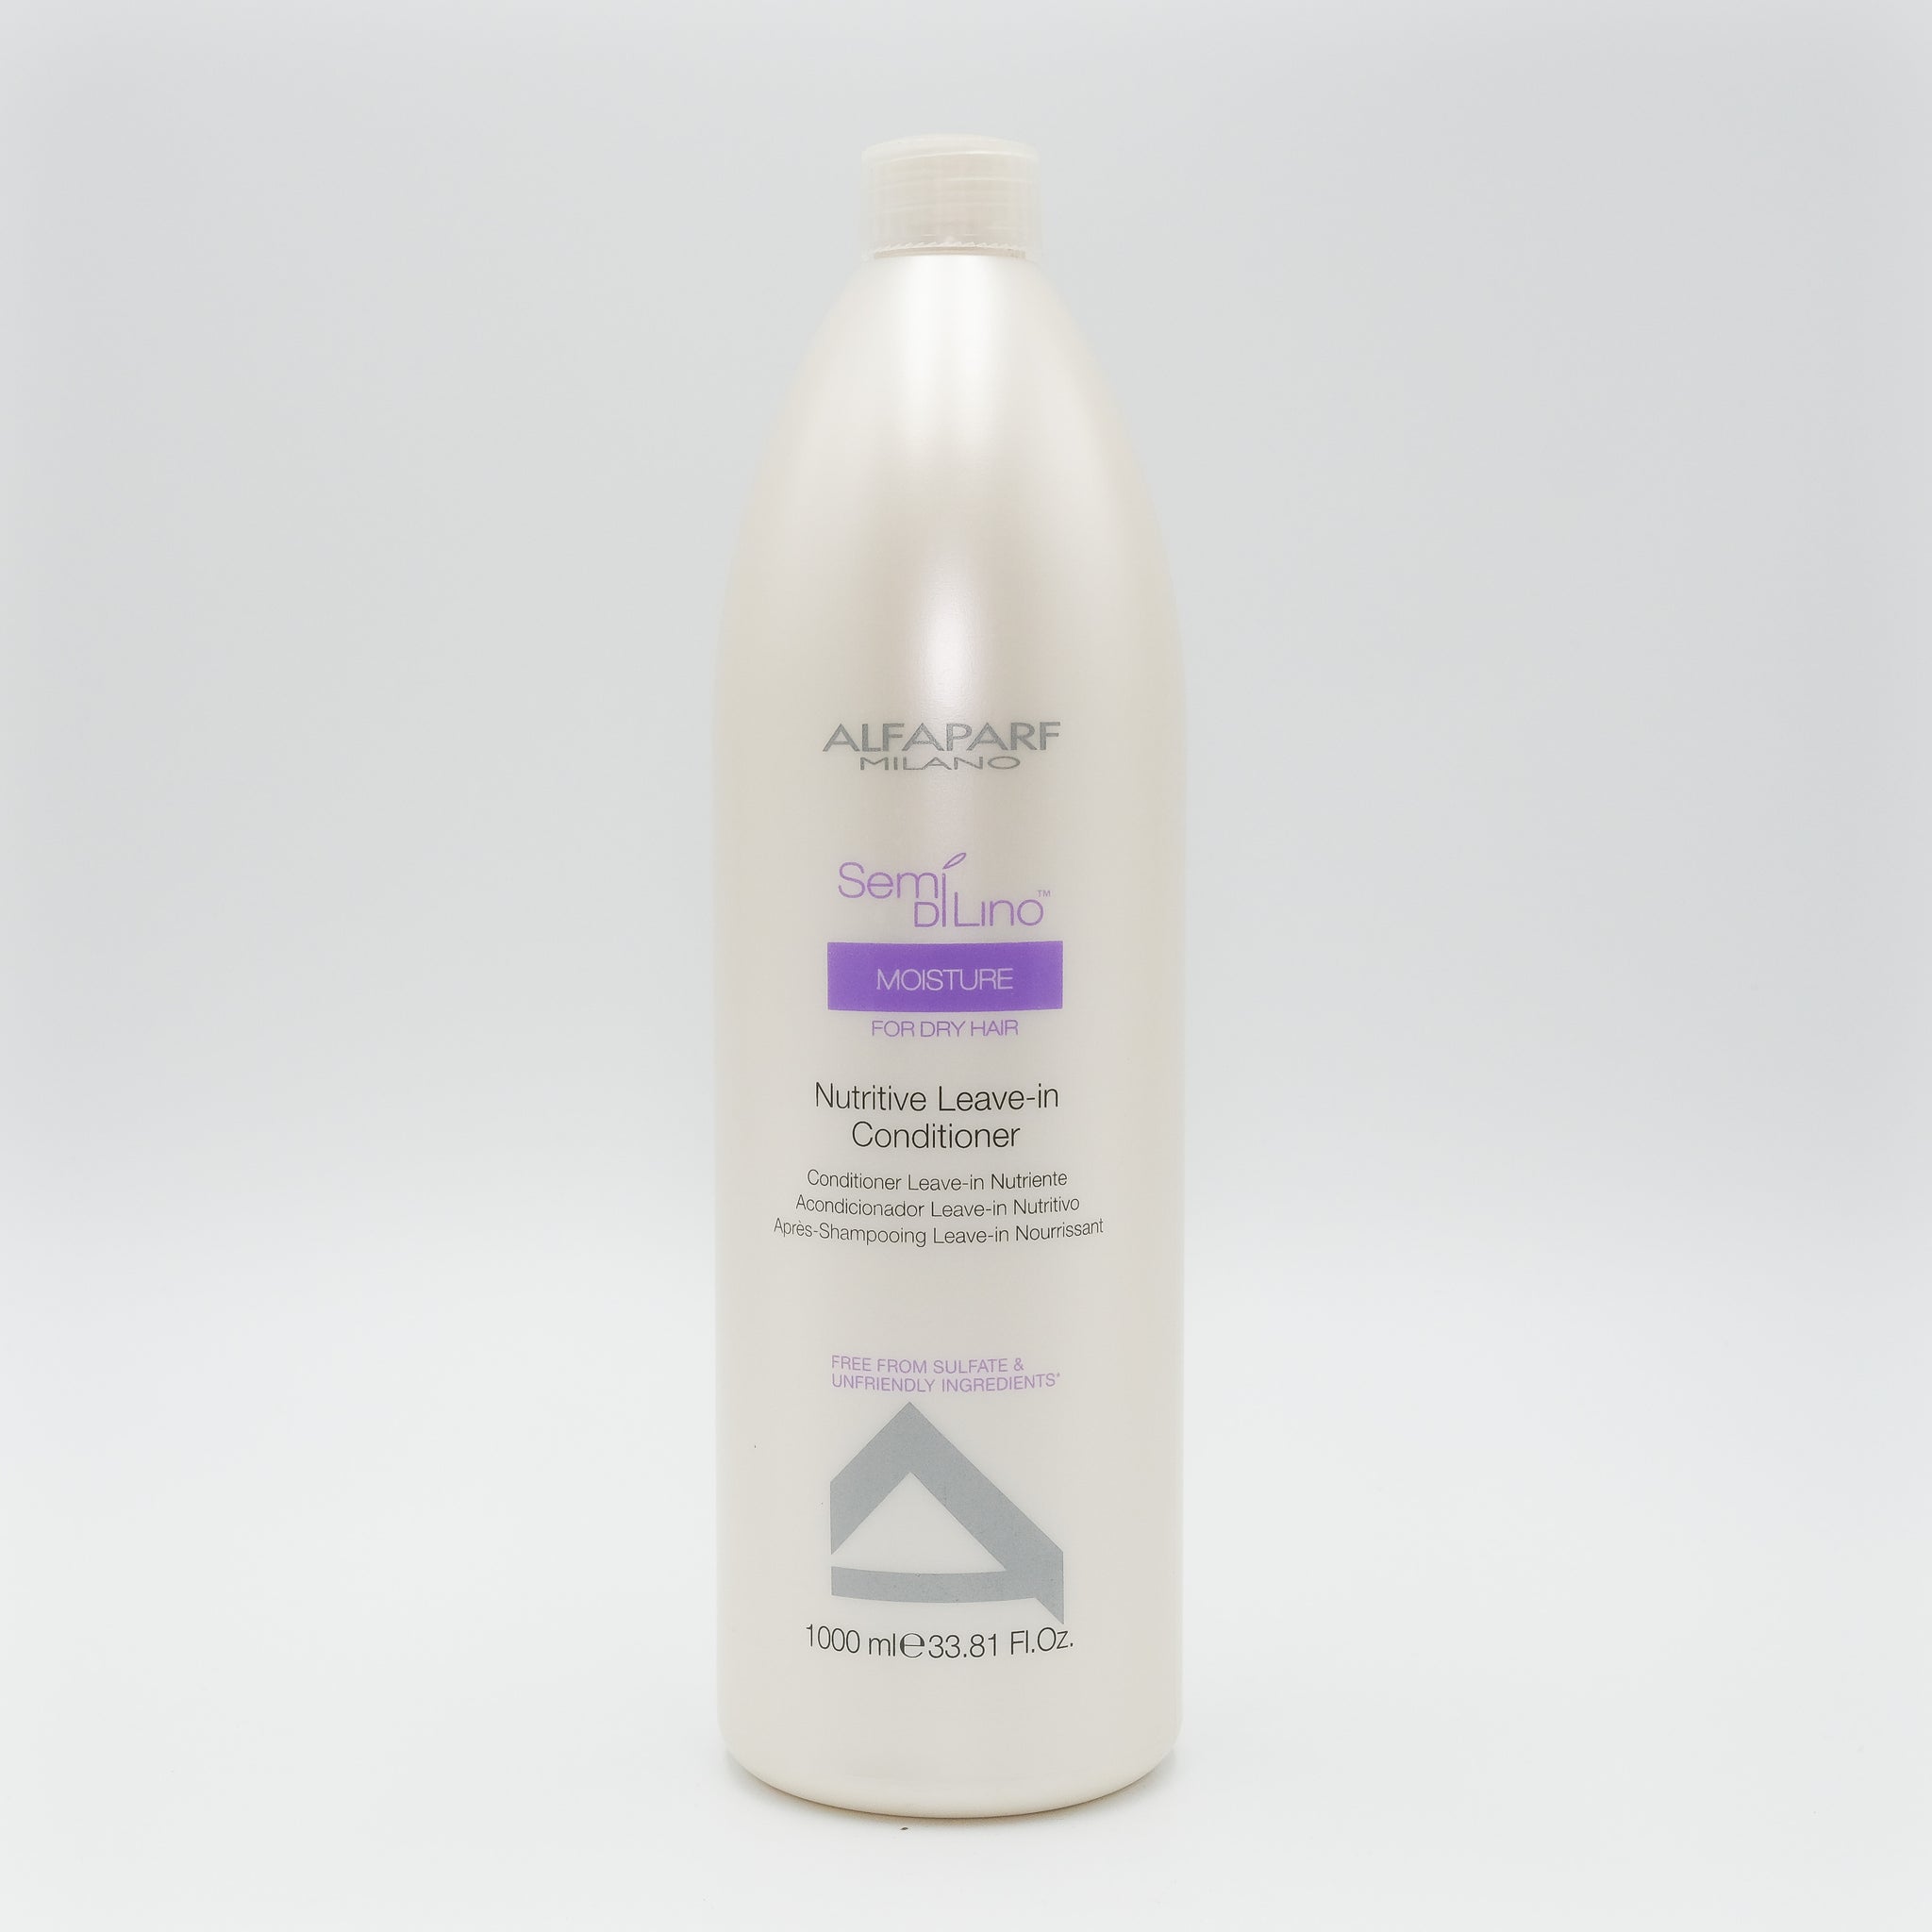 ALFAPARF Semi Di Lino Moisture for Dry Hair Nutritive Leave in Conditioner 33.81 oz